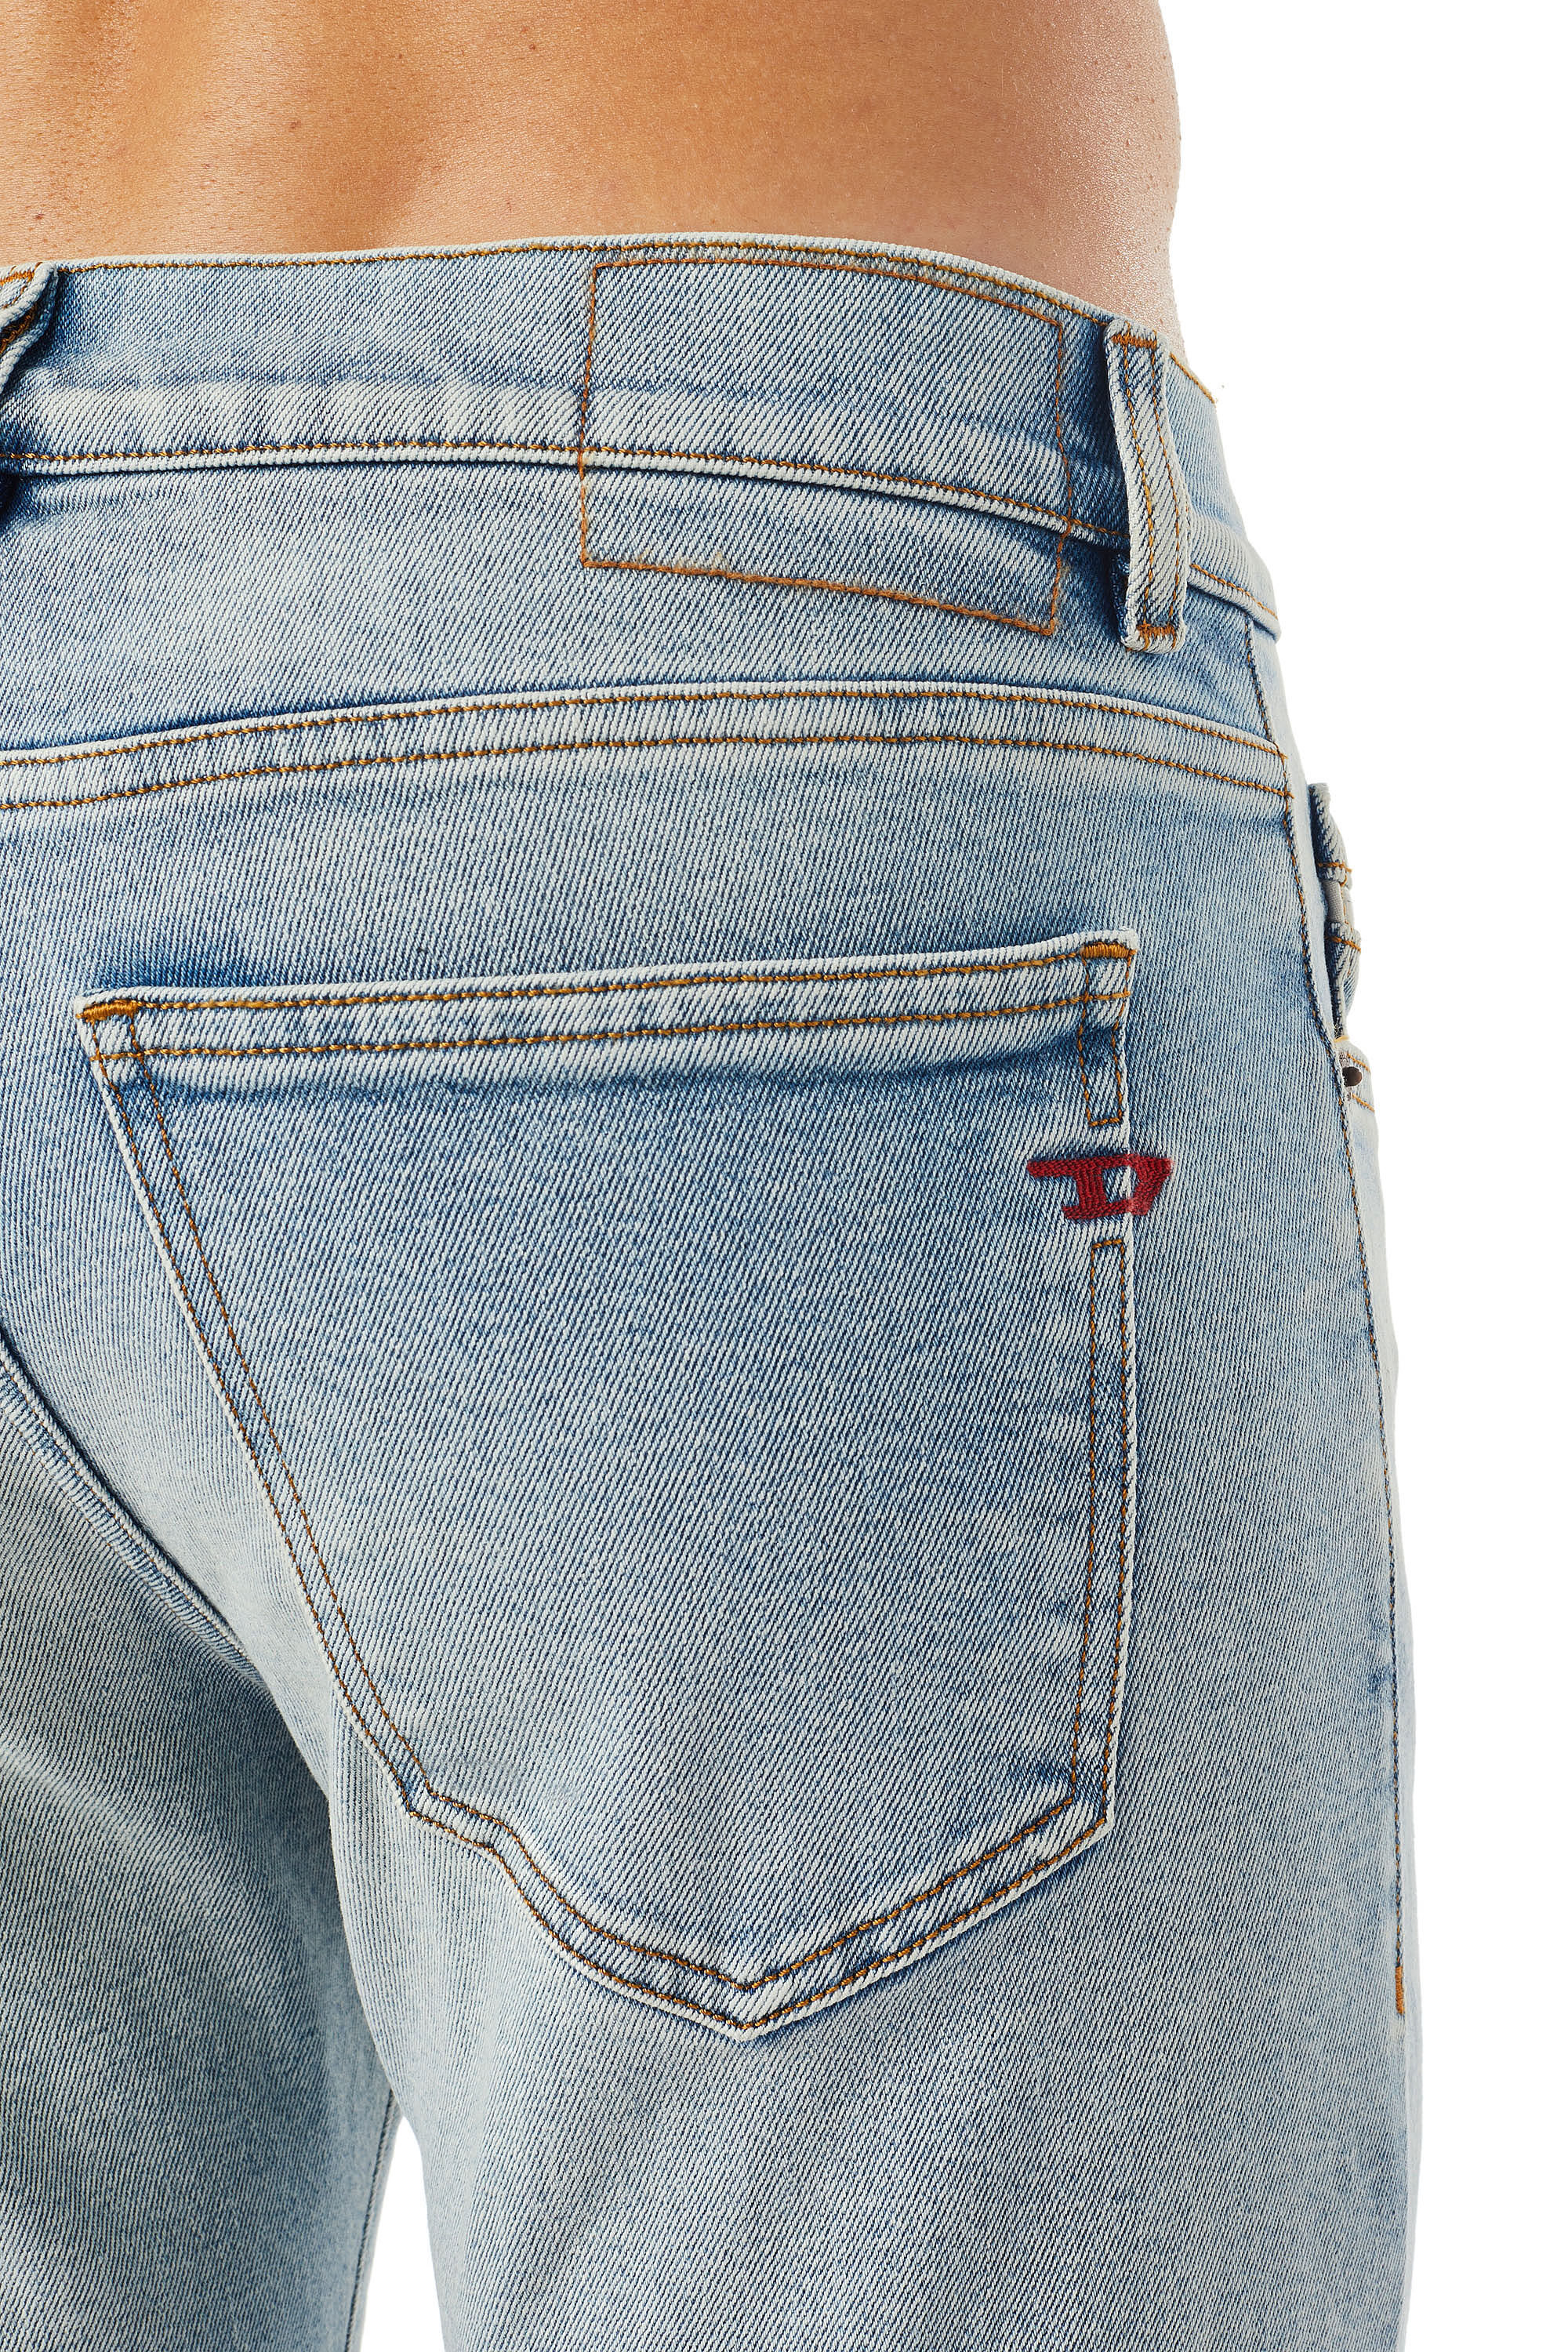 Diesel - Slim Jeans 2019 D-Strukt 09C08, Light Blue - Image 6